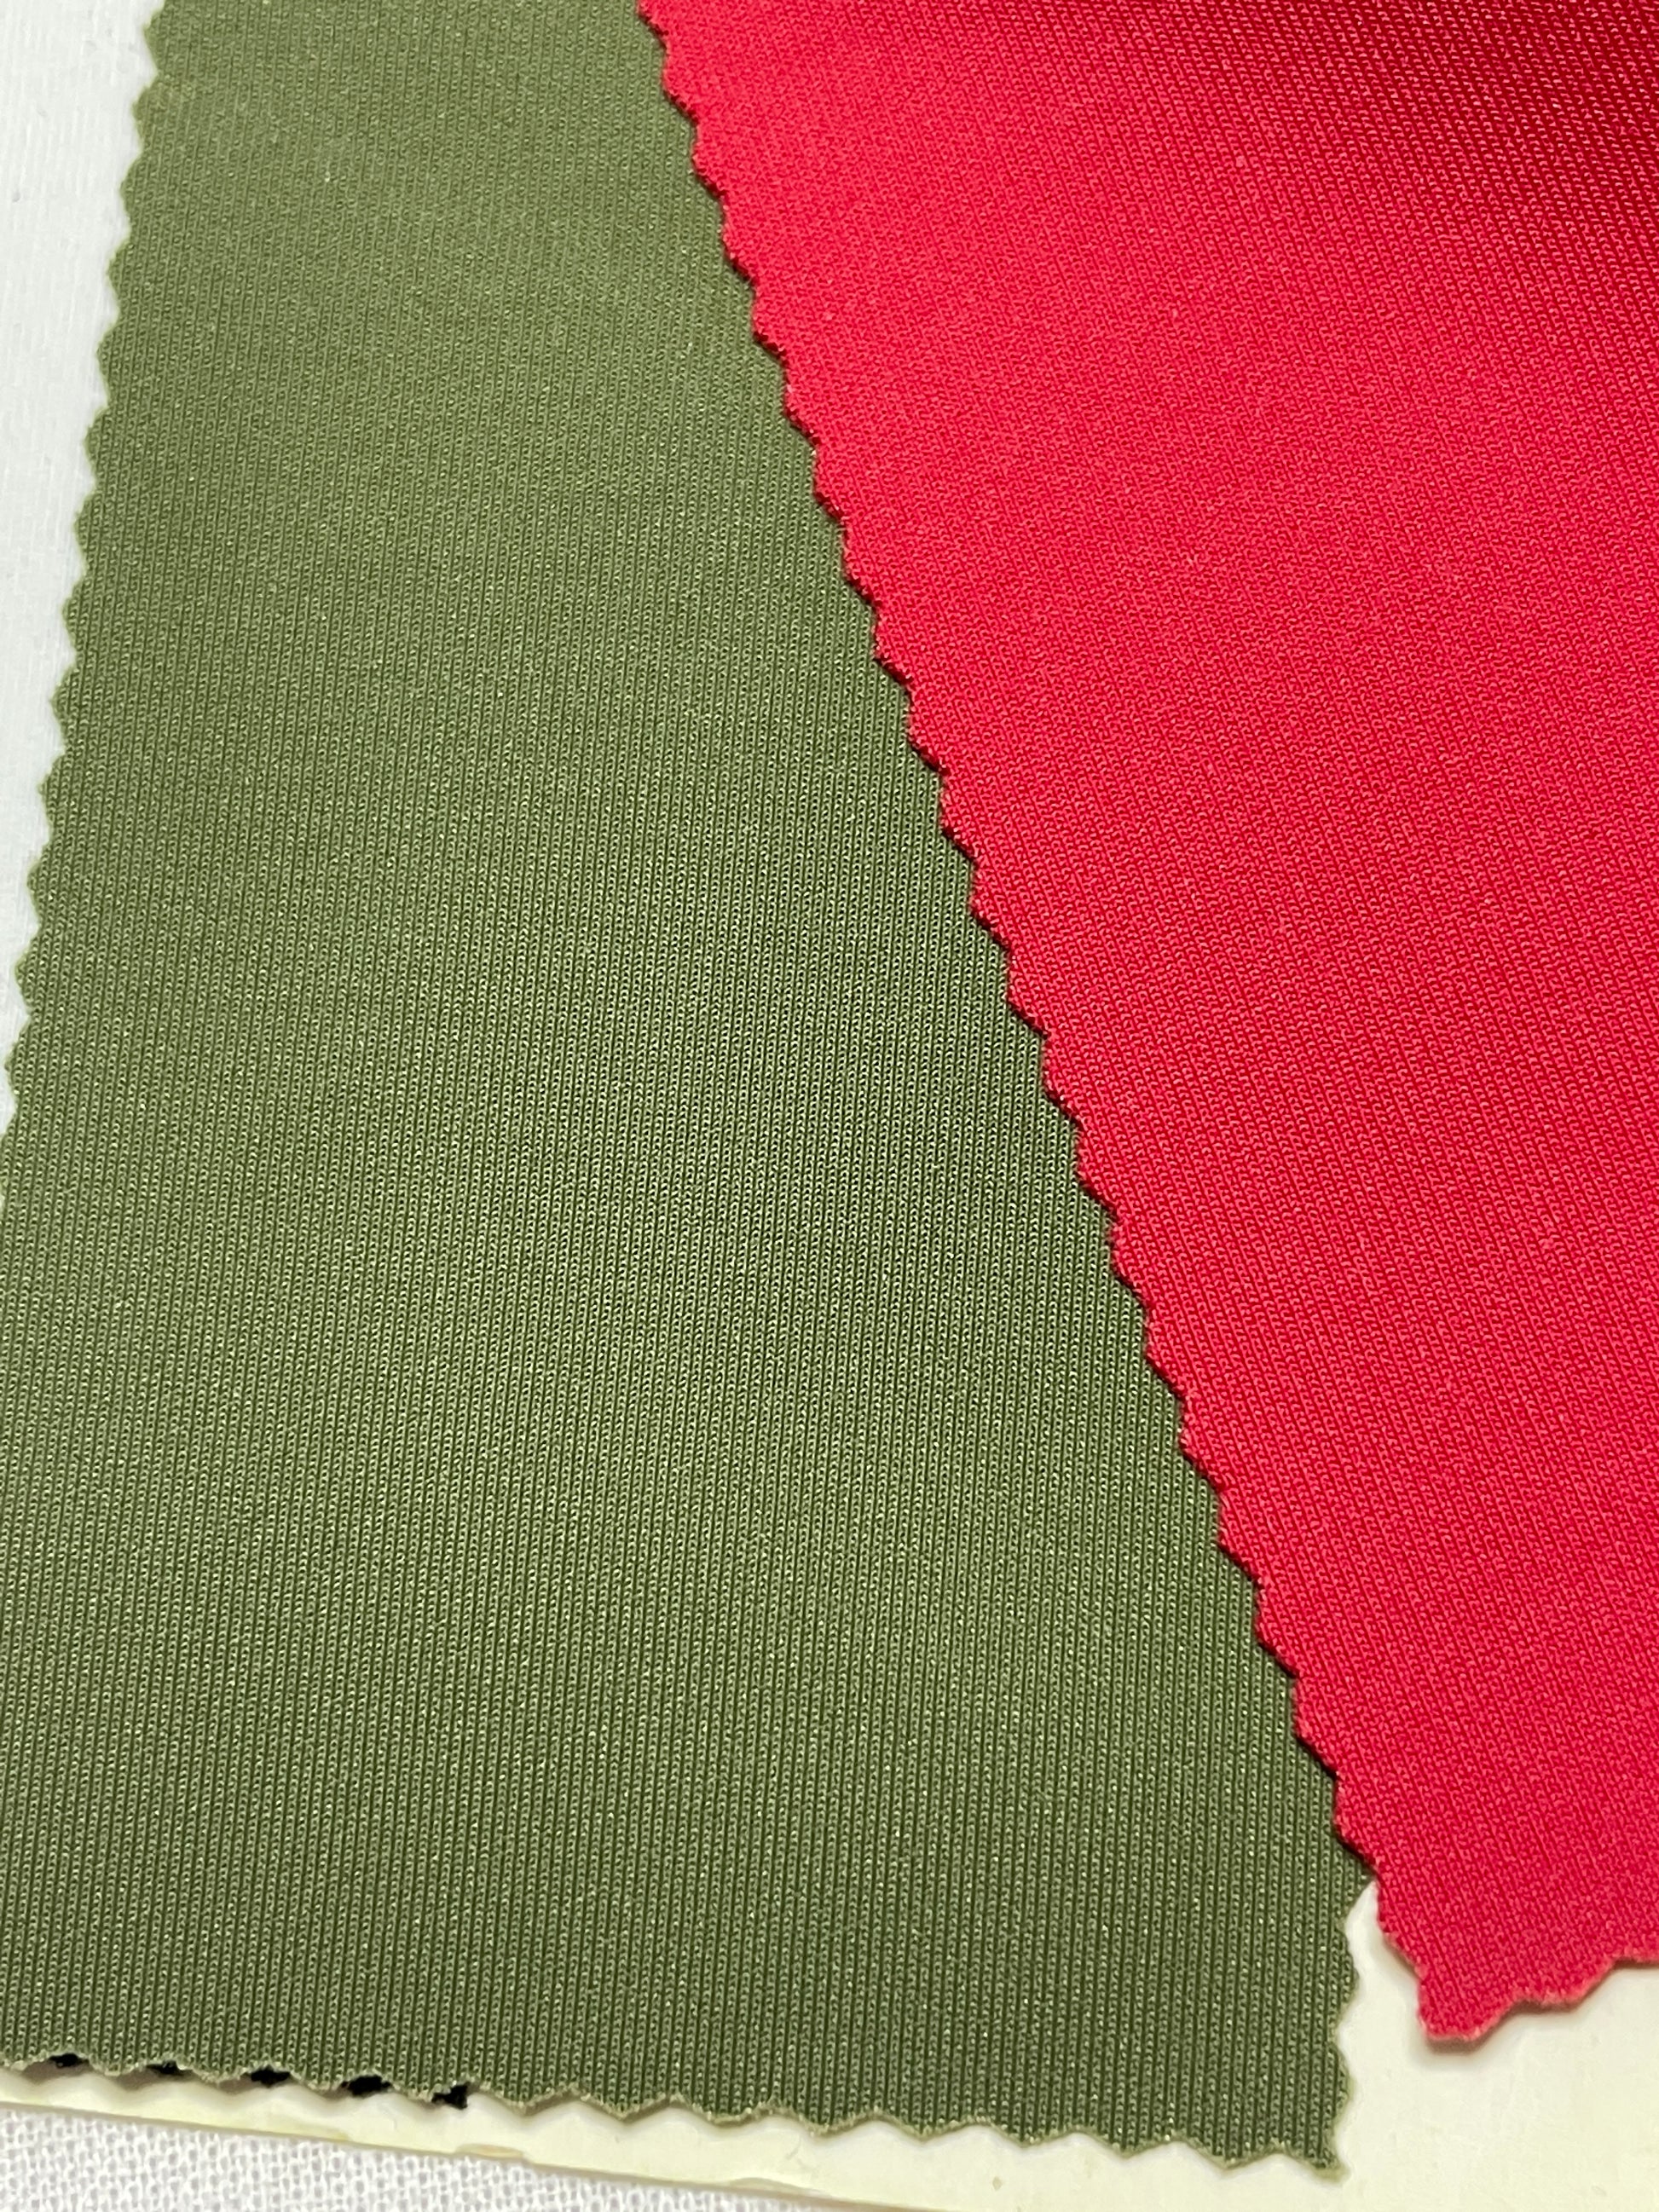 80%Nylon 20% Spandex Knit Fabric For Activewear-Double Side Use - Natasha Fabric